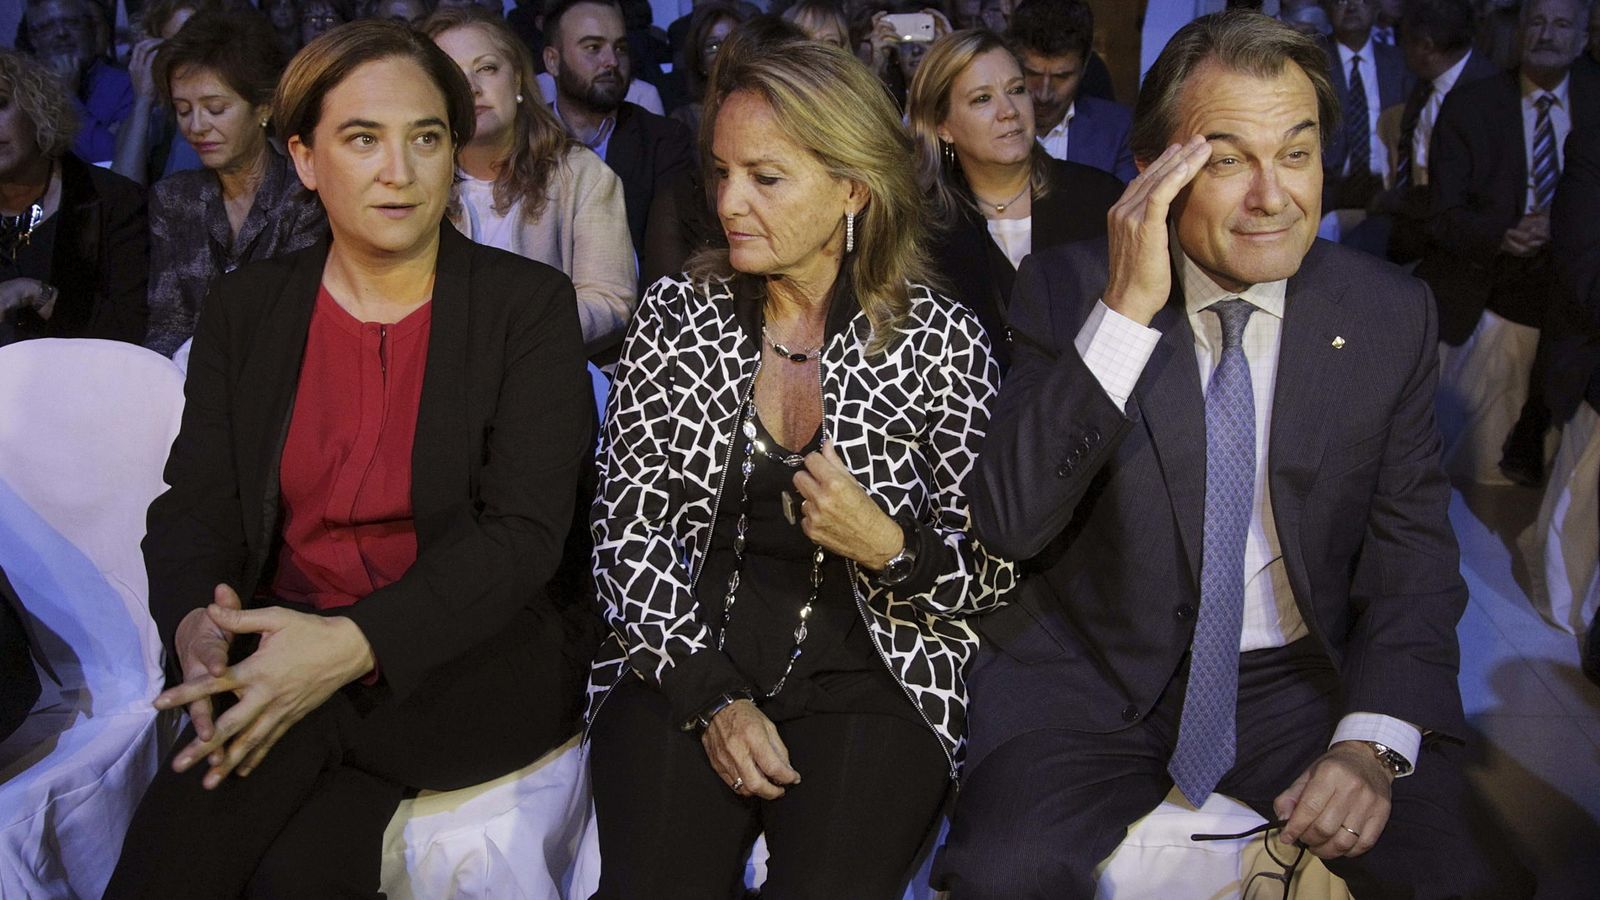 Foto: La alcaldesa de Barcelona, Ada Colau, asiste con el presidente de la Generalitat, Artur Mas, y su esposa, Helena Rakosnik, a una entrega de premios. (EFE)